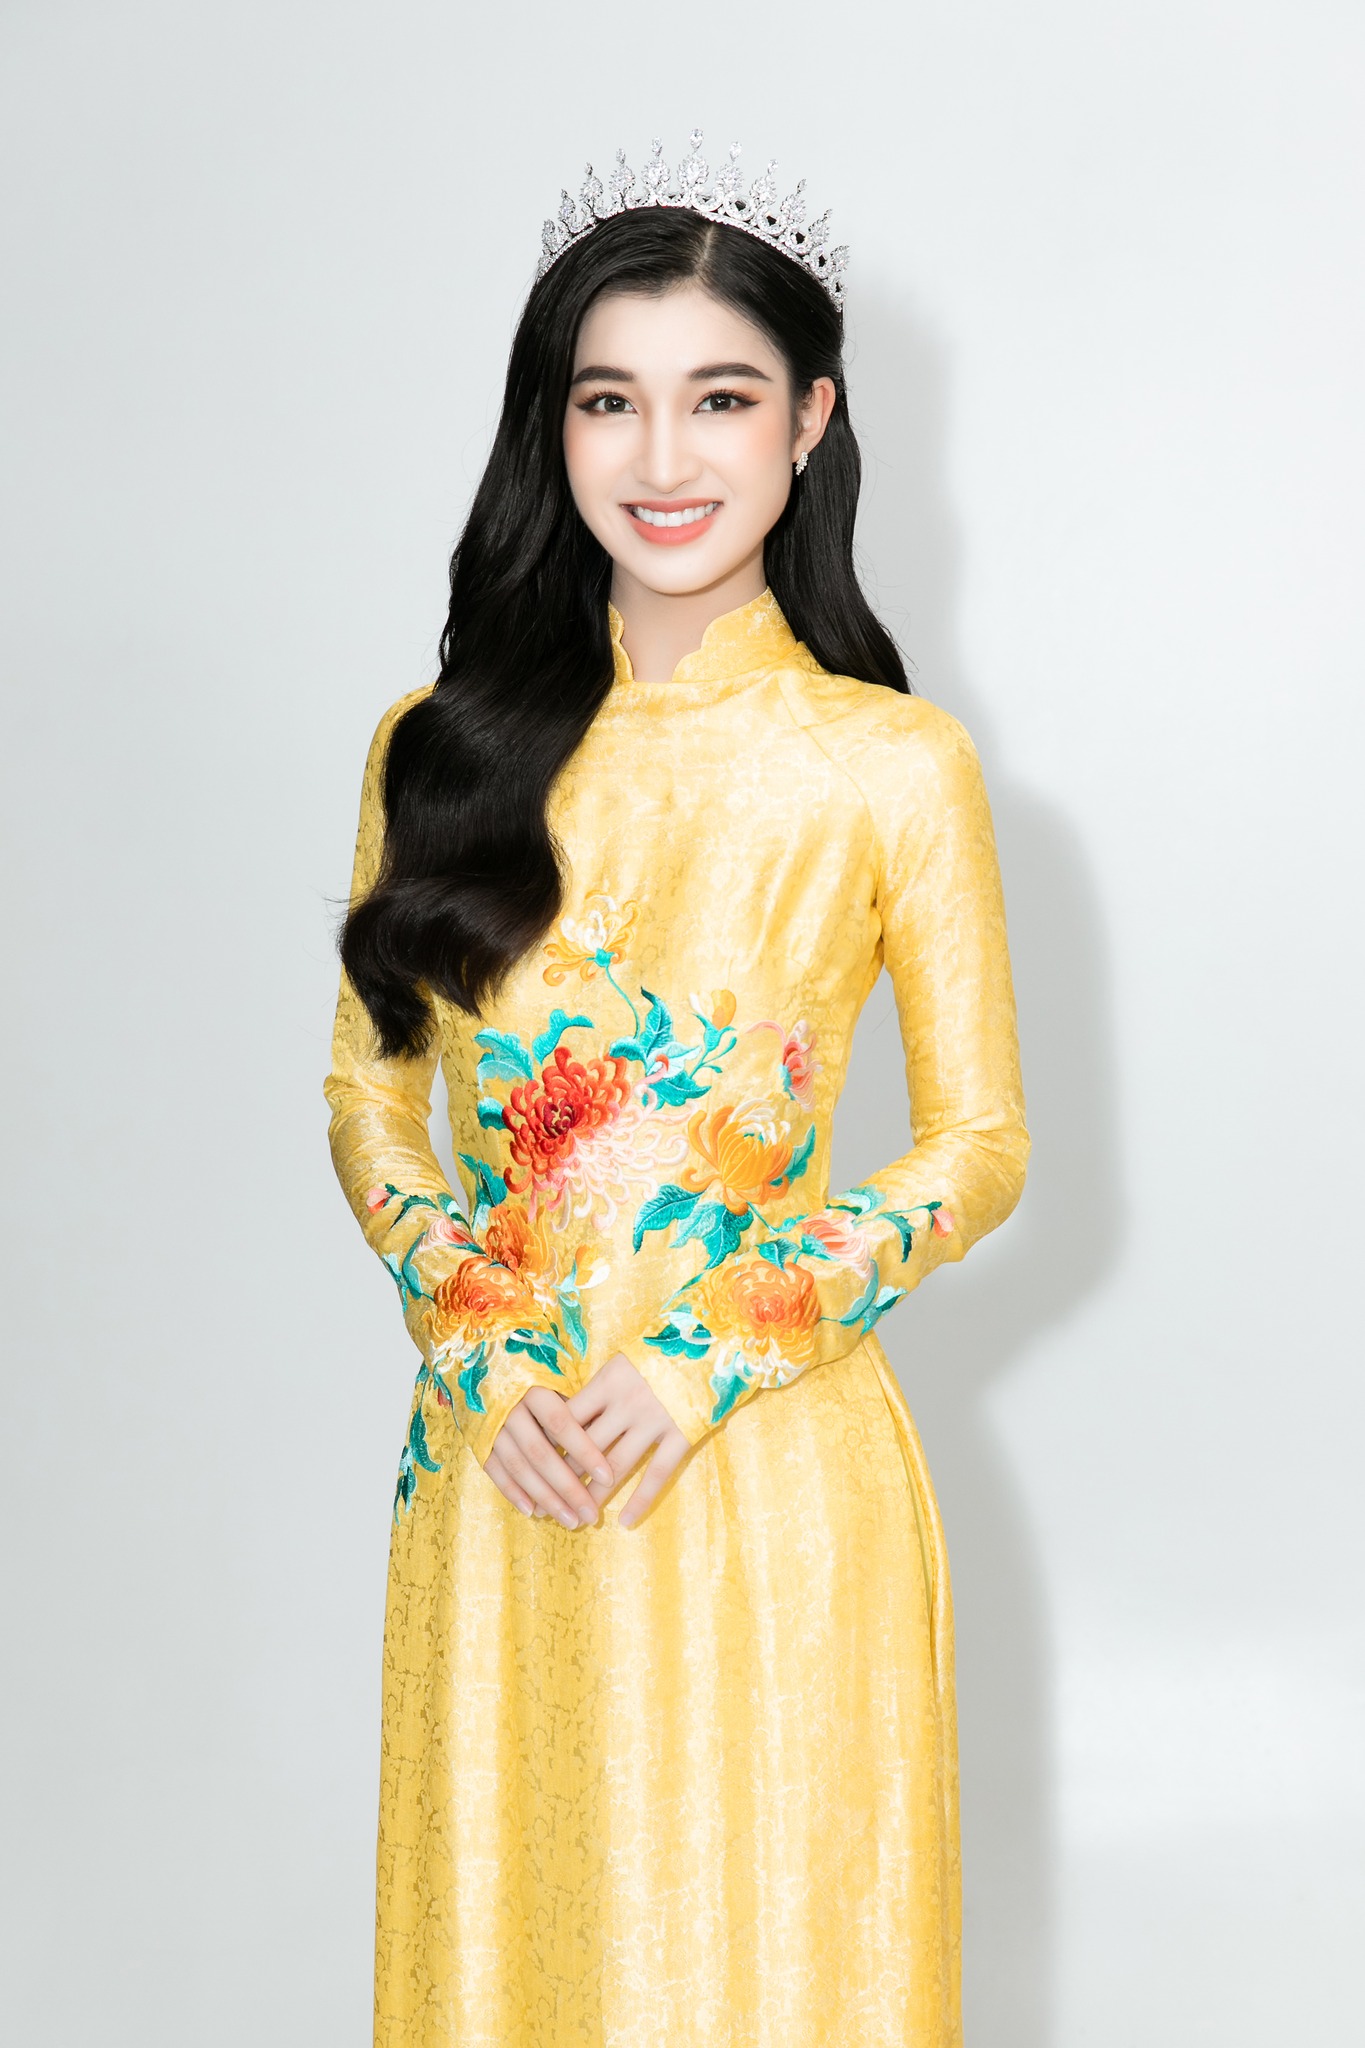 Áo dài - trang phục truyền thống của đất nước Việt Nam, là biểu tượng văn hóa và sự đẹp của đất nước. Hãy cùng đến để tham quan và tìm hiểu sự đa dạng về kiểu dáng và màu sắc của trang phục này.